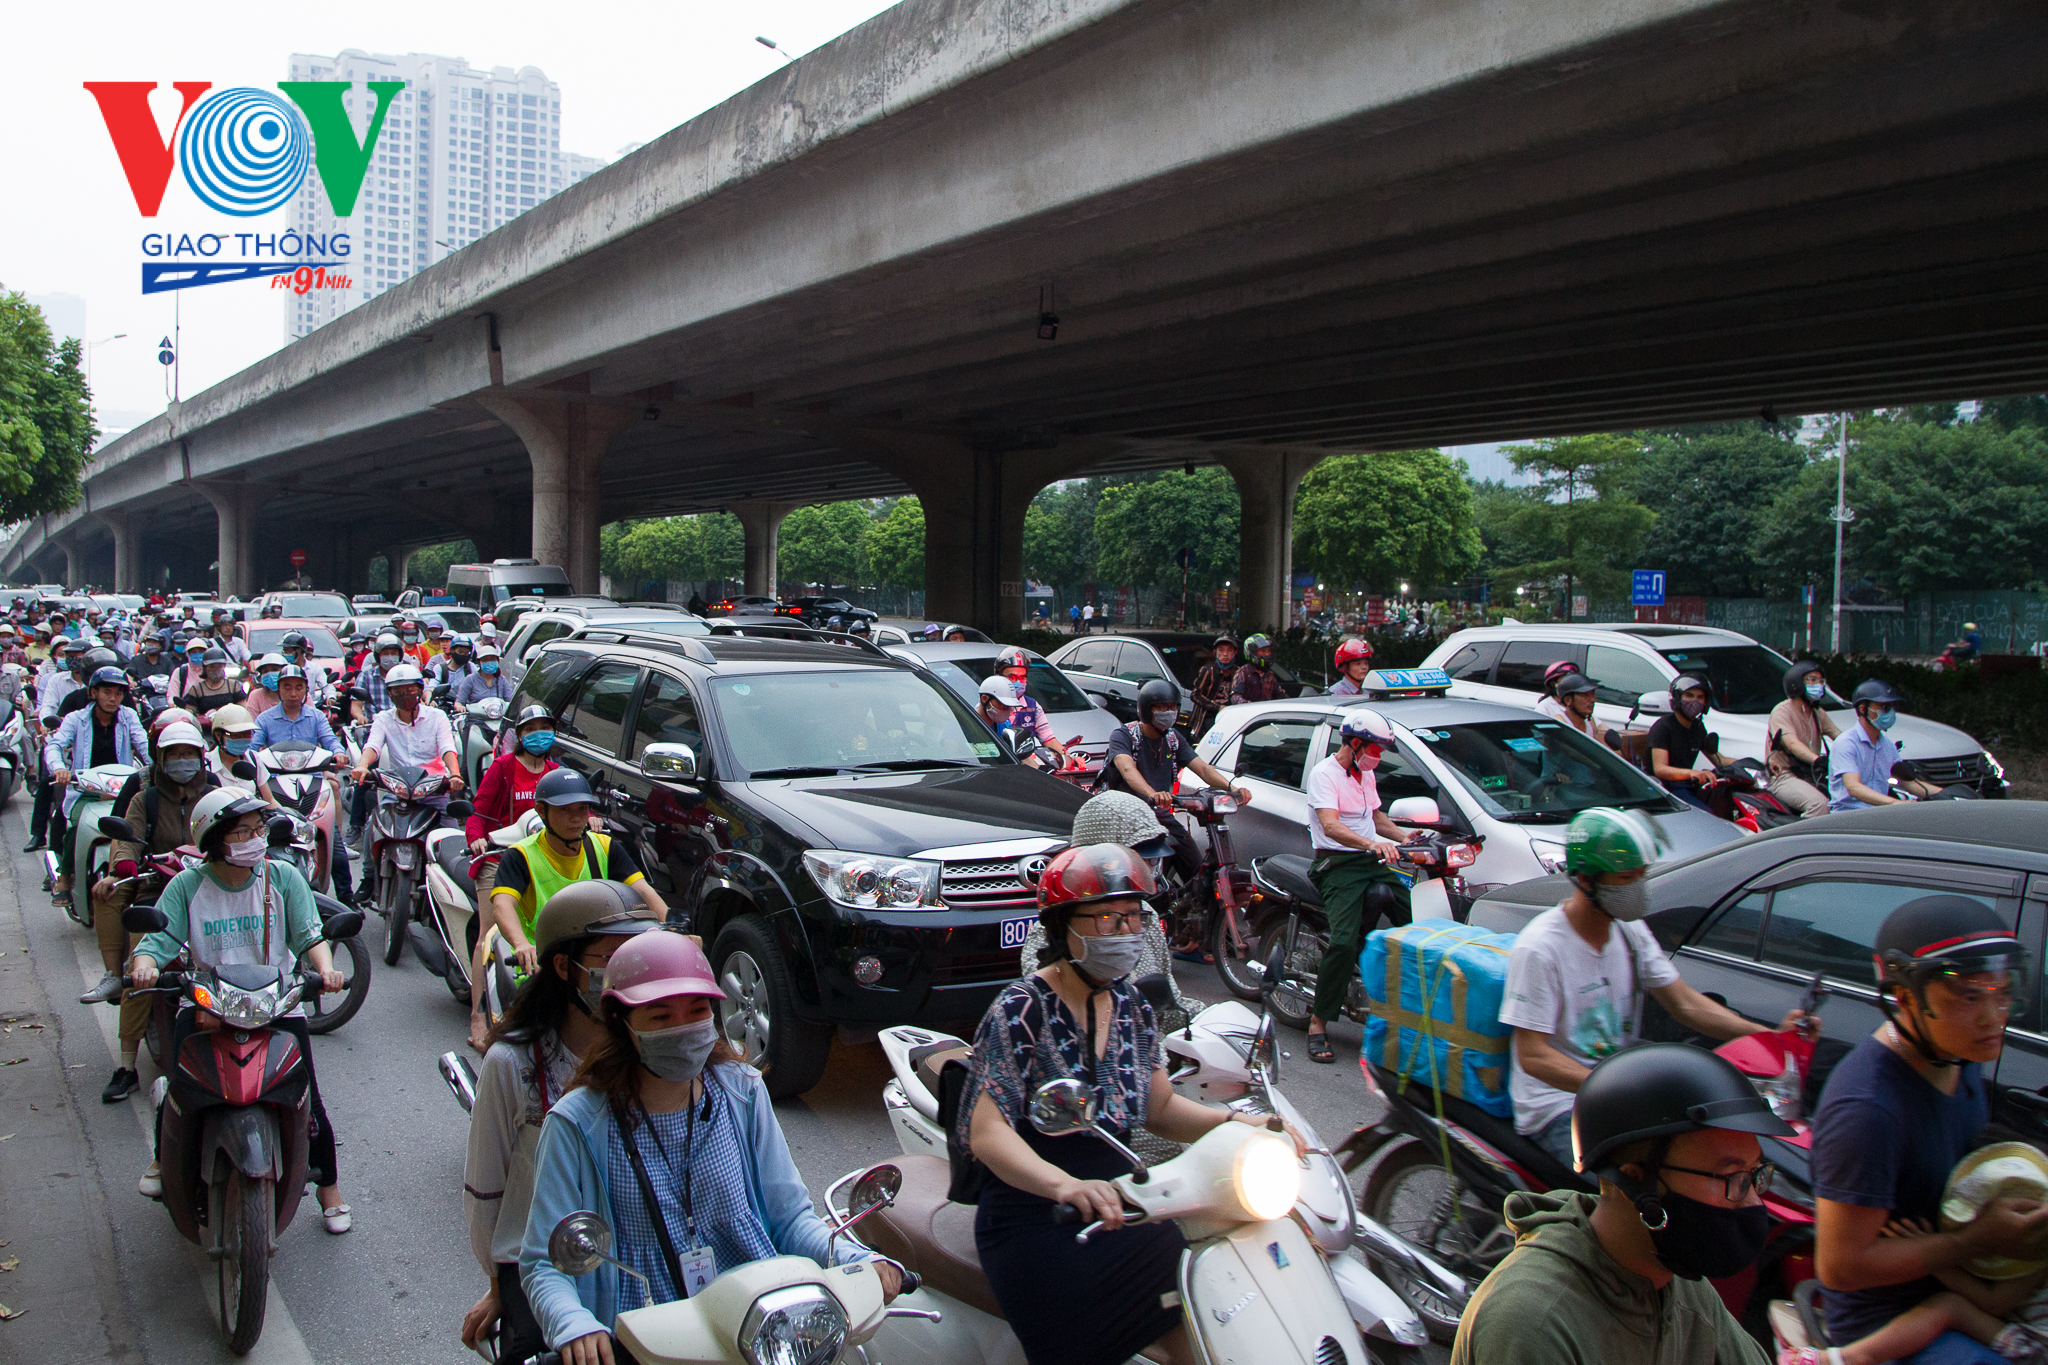 Trong những năm qua, thành phố Hà Nội đã và đang tập trung phát triển nhiều công trình kết cấu hạ tầng giao thông để từng bước hoàn thiện theo quy hoạch